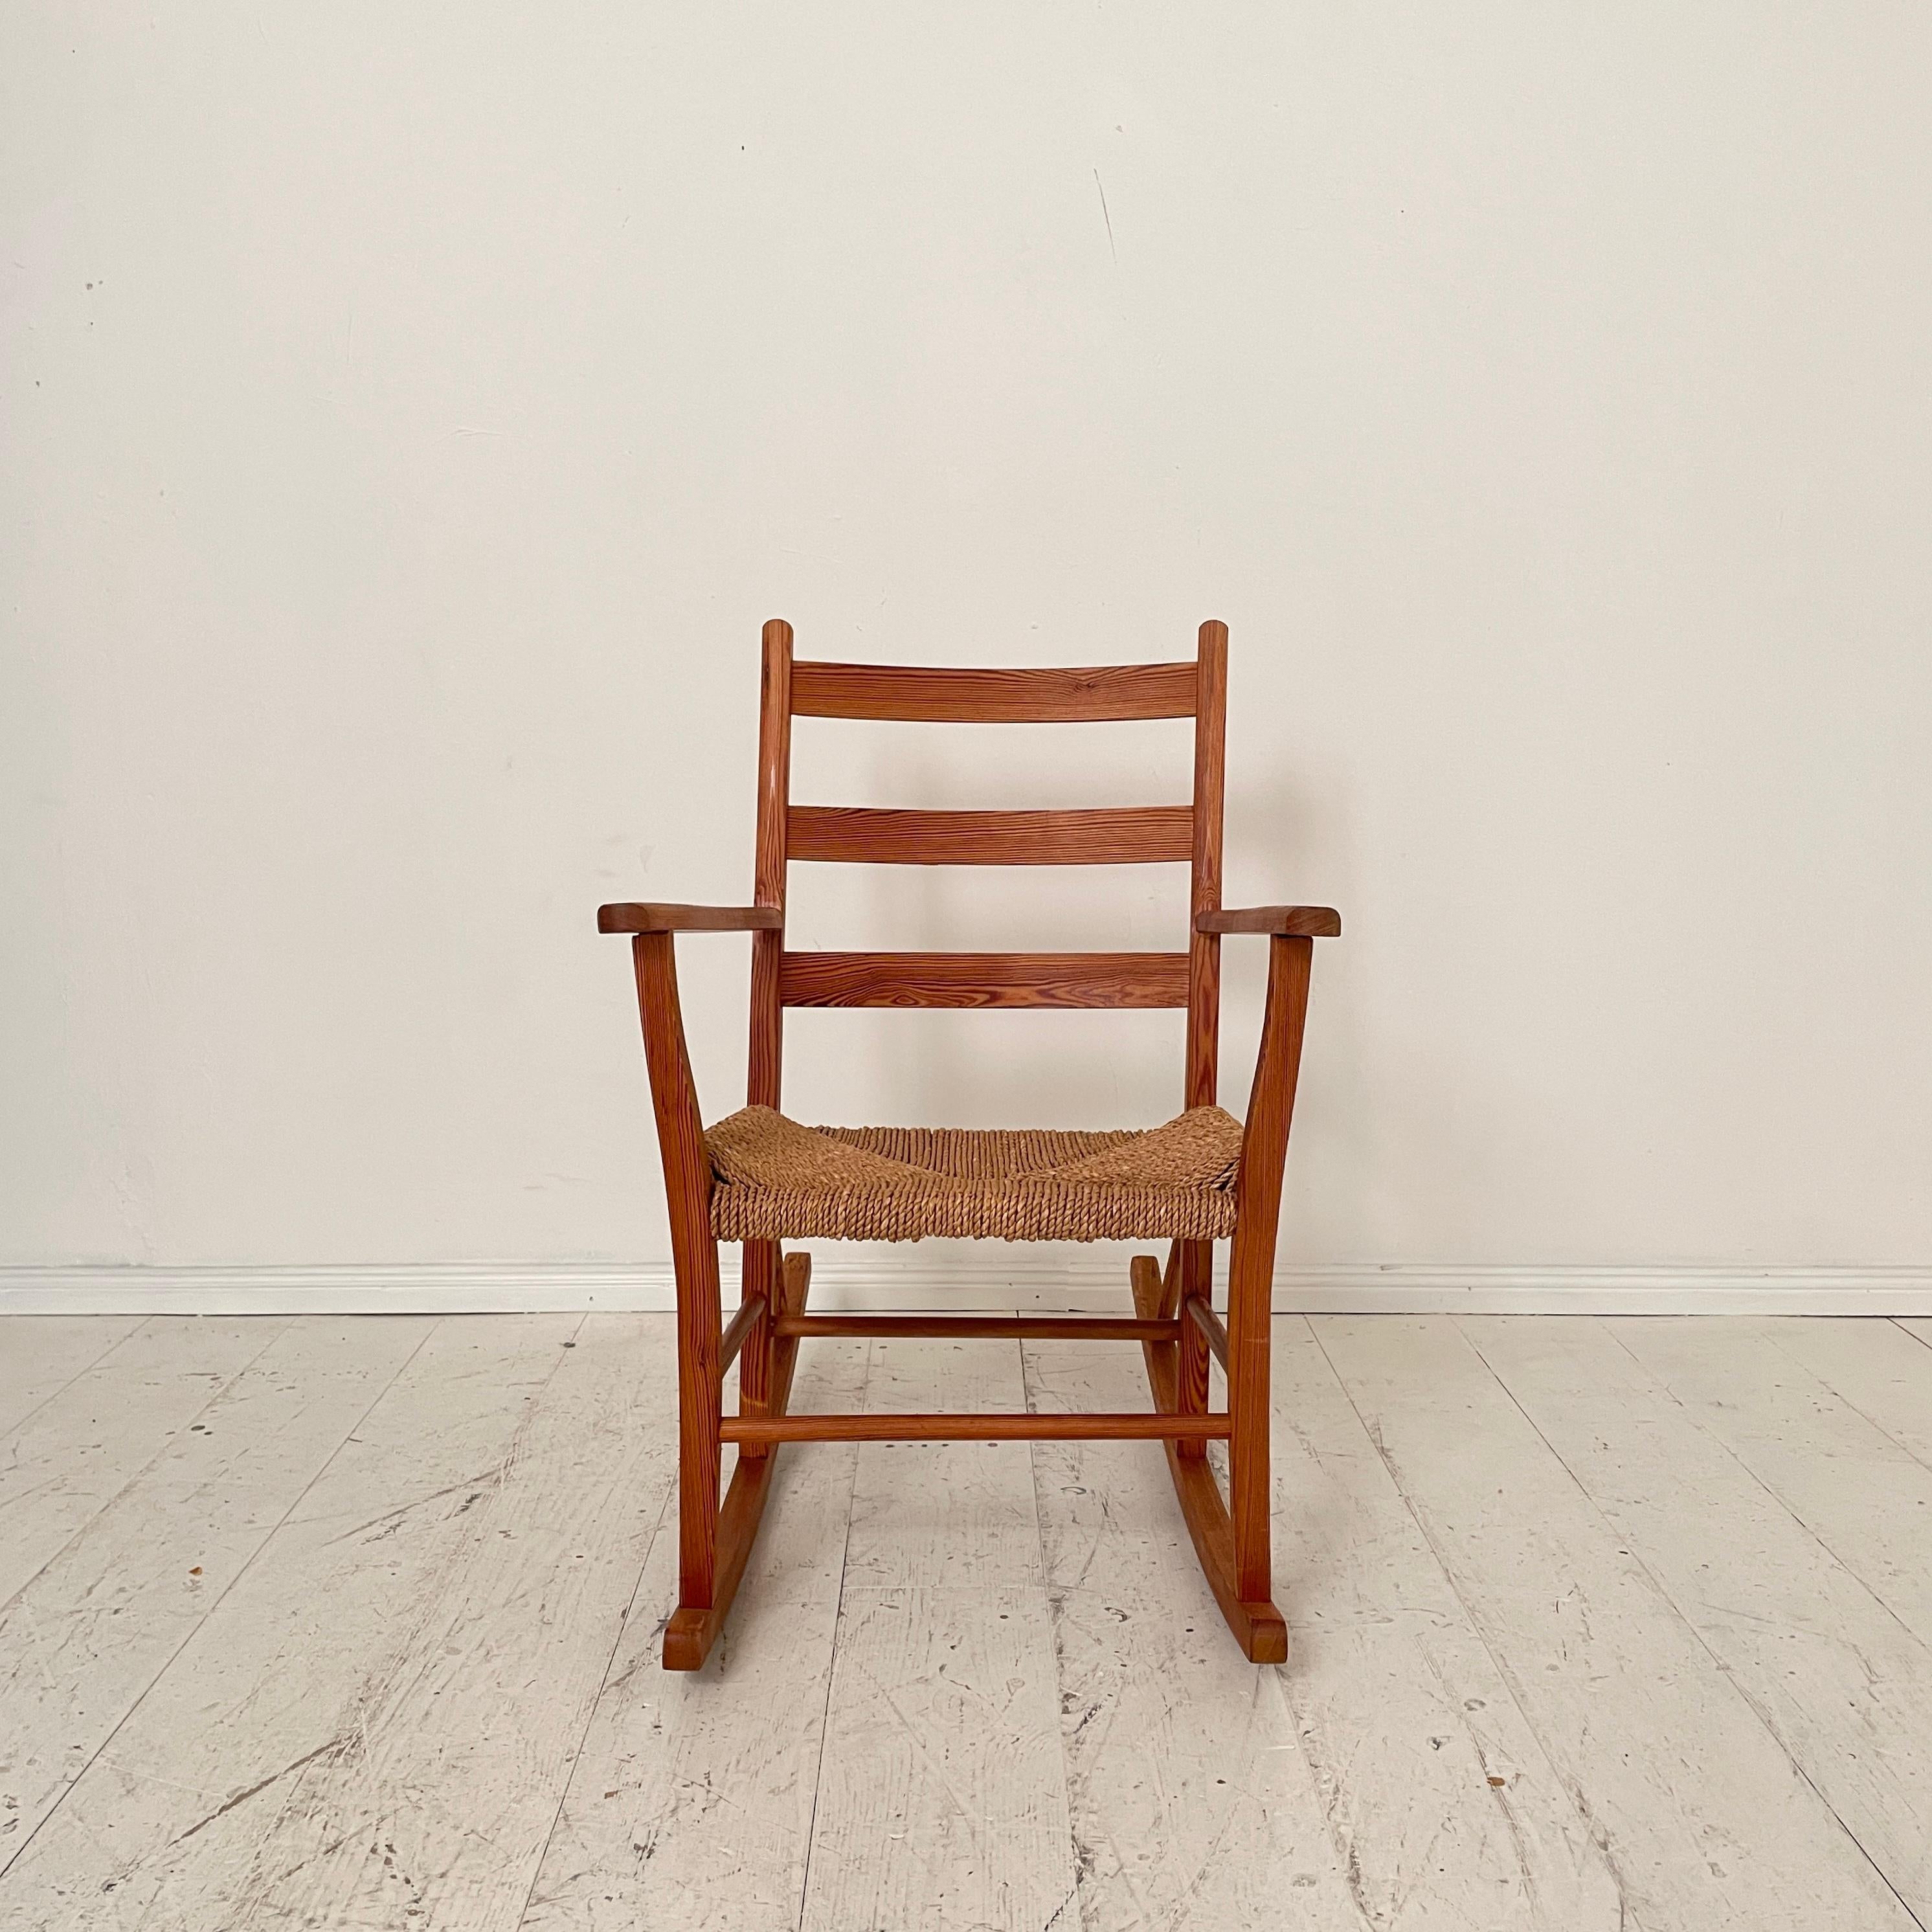 Dieser schöne und sehr bequeme norwegische Schaukelstuhl wurde von Aksel Hansson in den 1930er Jahren hergestellt und entworfen. Der Stuhl ist aus massivem Kiefernholz gefertigt und die Sitzfläche besteht aus geflochtenem Seil.
Ein einzigartiges